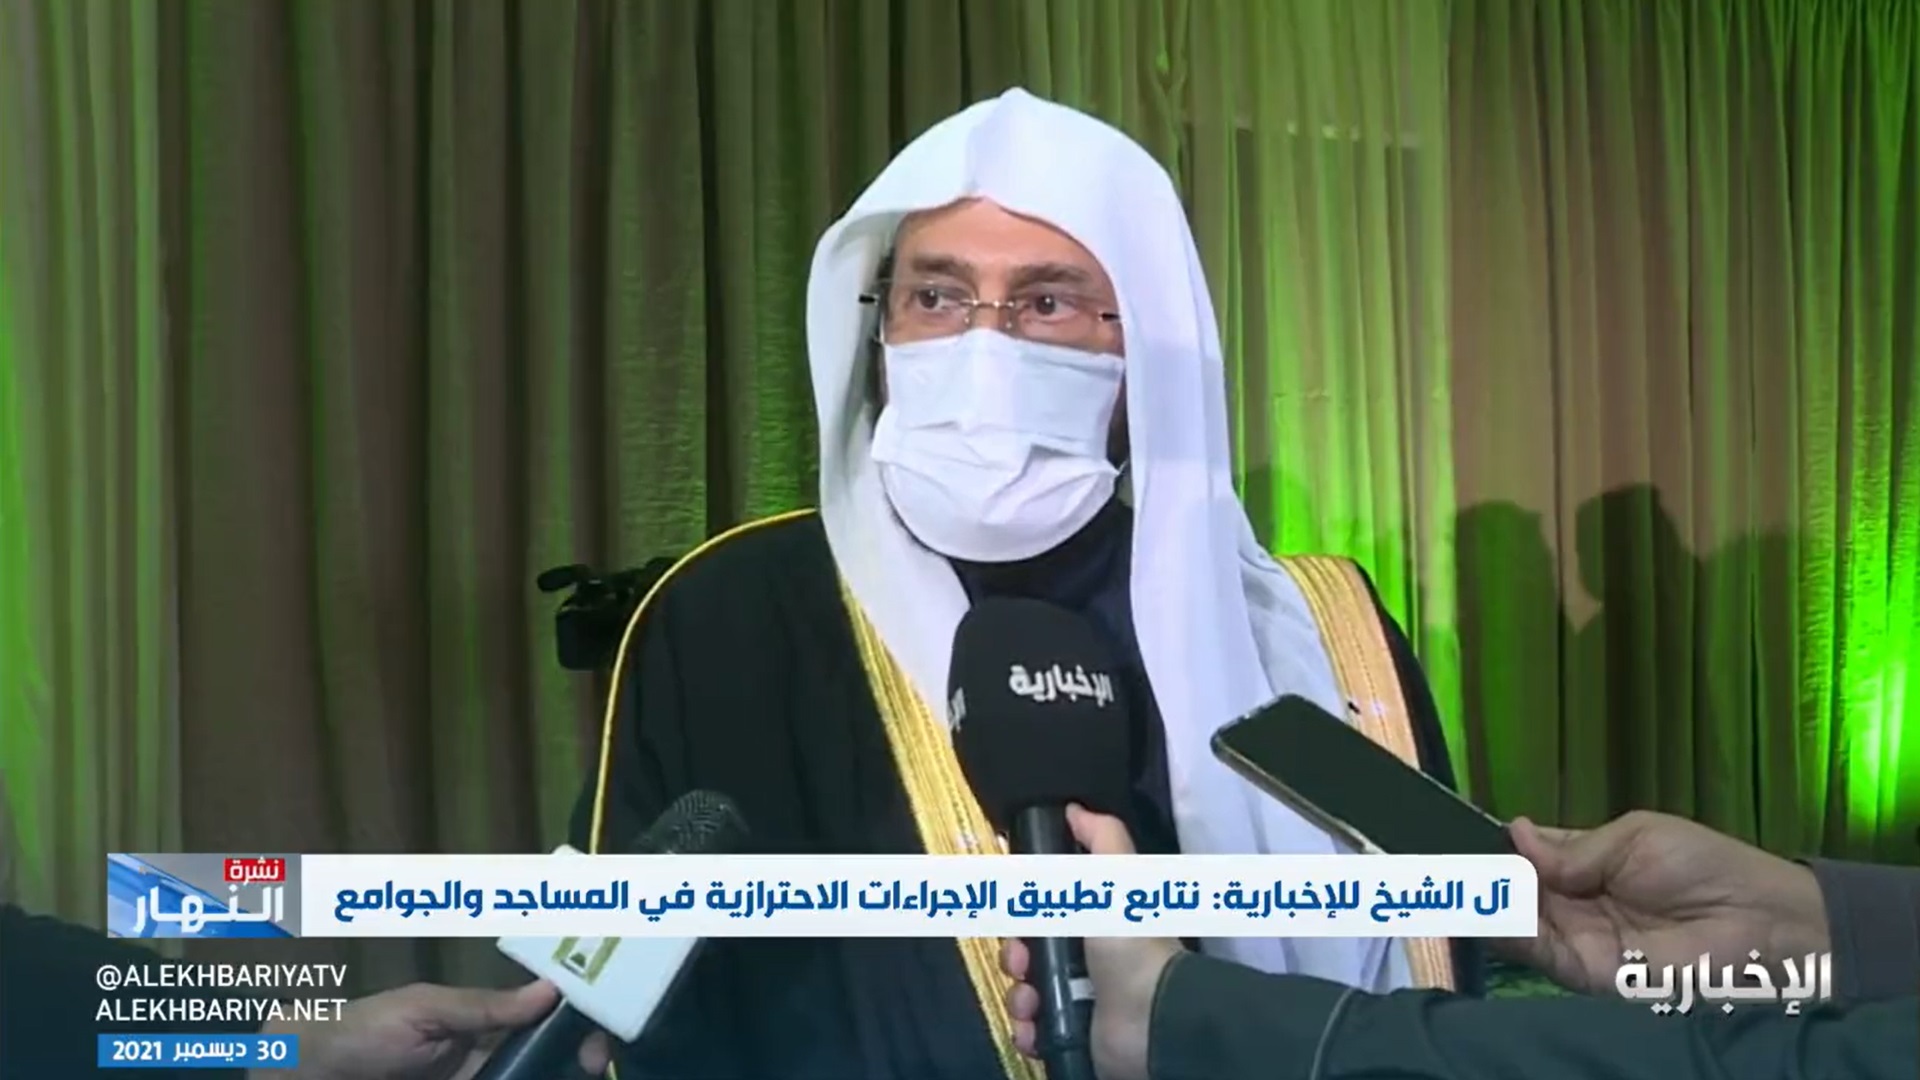 بالفيديو.. وزير الشؤون الإسلامية يوجه الأئمة والمؤذنين : لا تجعلوا لهؤلاء الأشخاص مكاناً بالمساجد